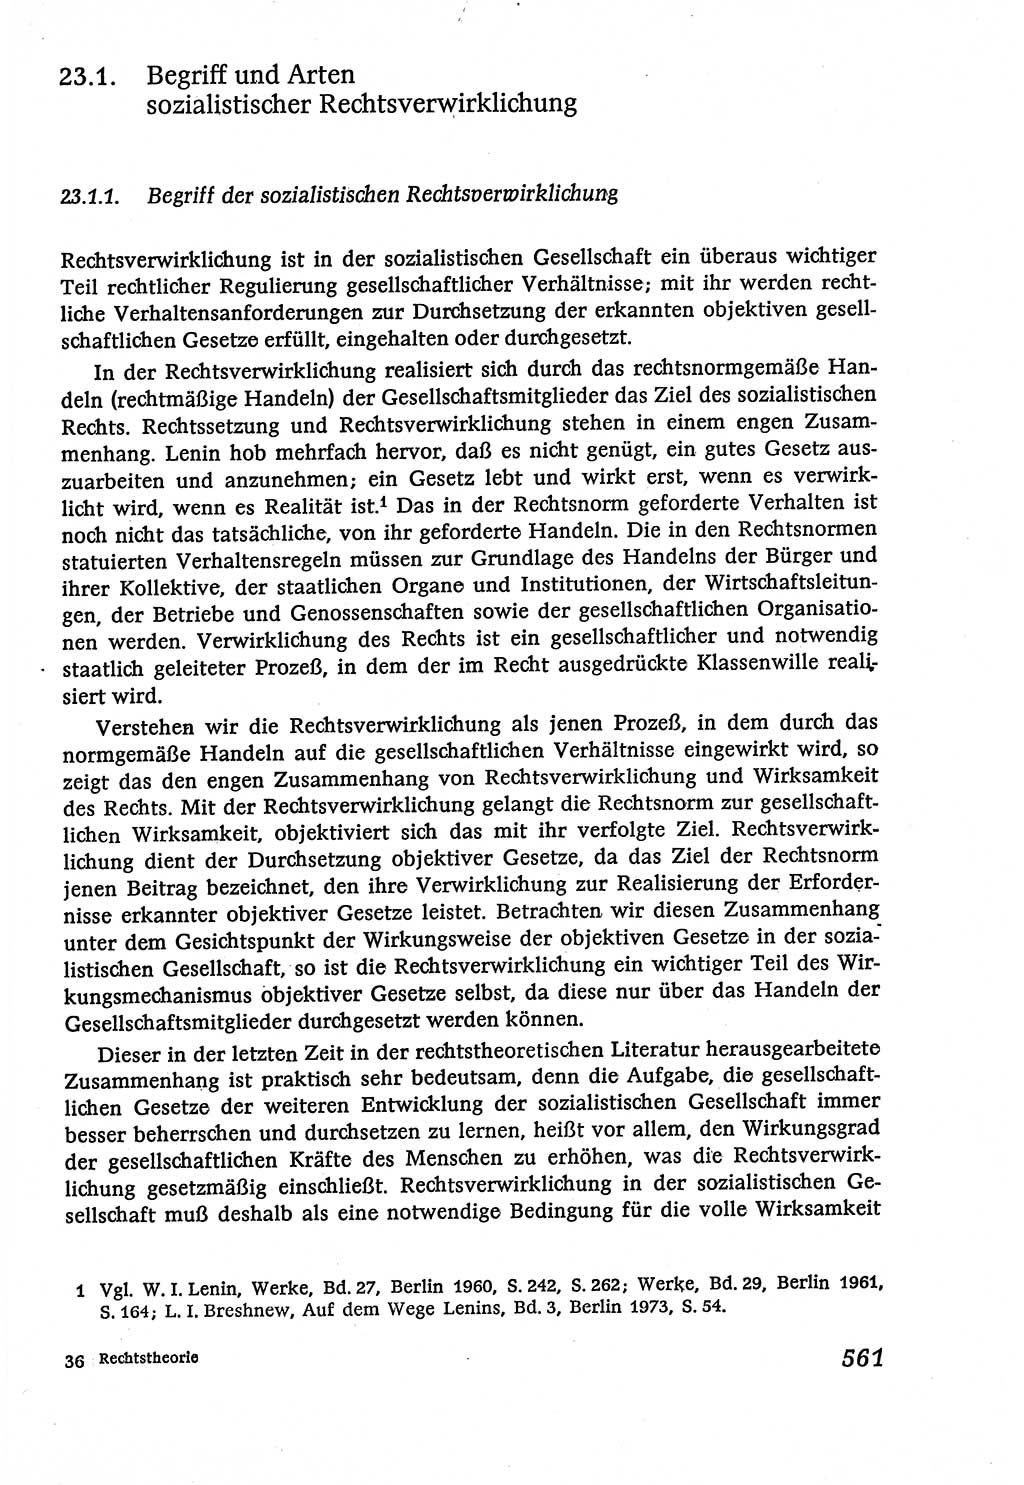 Marxistisch-leninistische (ML) Staats- und Rechtstheorie [Deutsche Demokratische Republik (DDR)], Lehrbuch 1980, Seite 561 (ML St.-R.-Th. DDR Lb. 1980, S. 561)